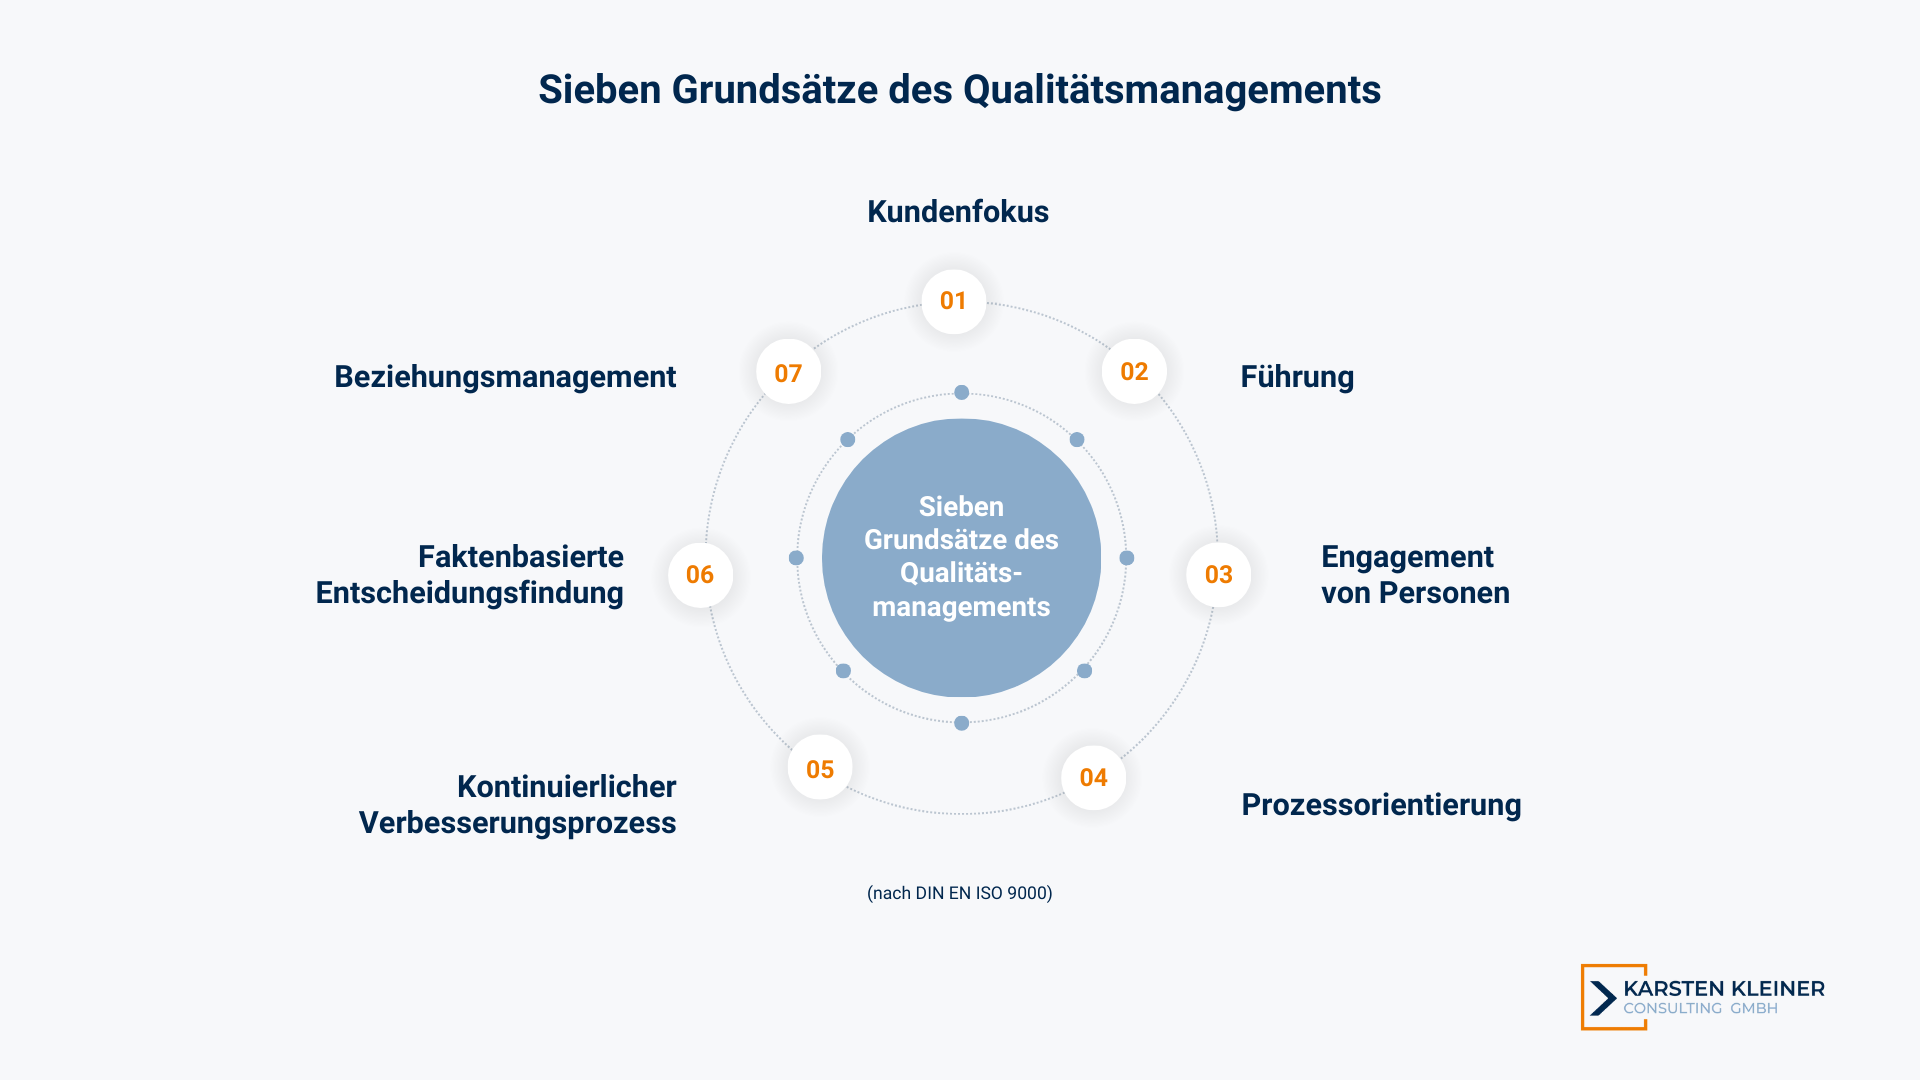 Sieben Grundsätze des Qualitätsmanagements